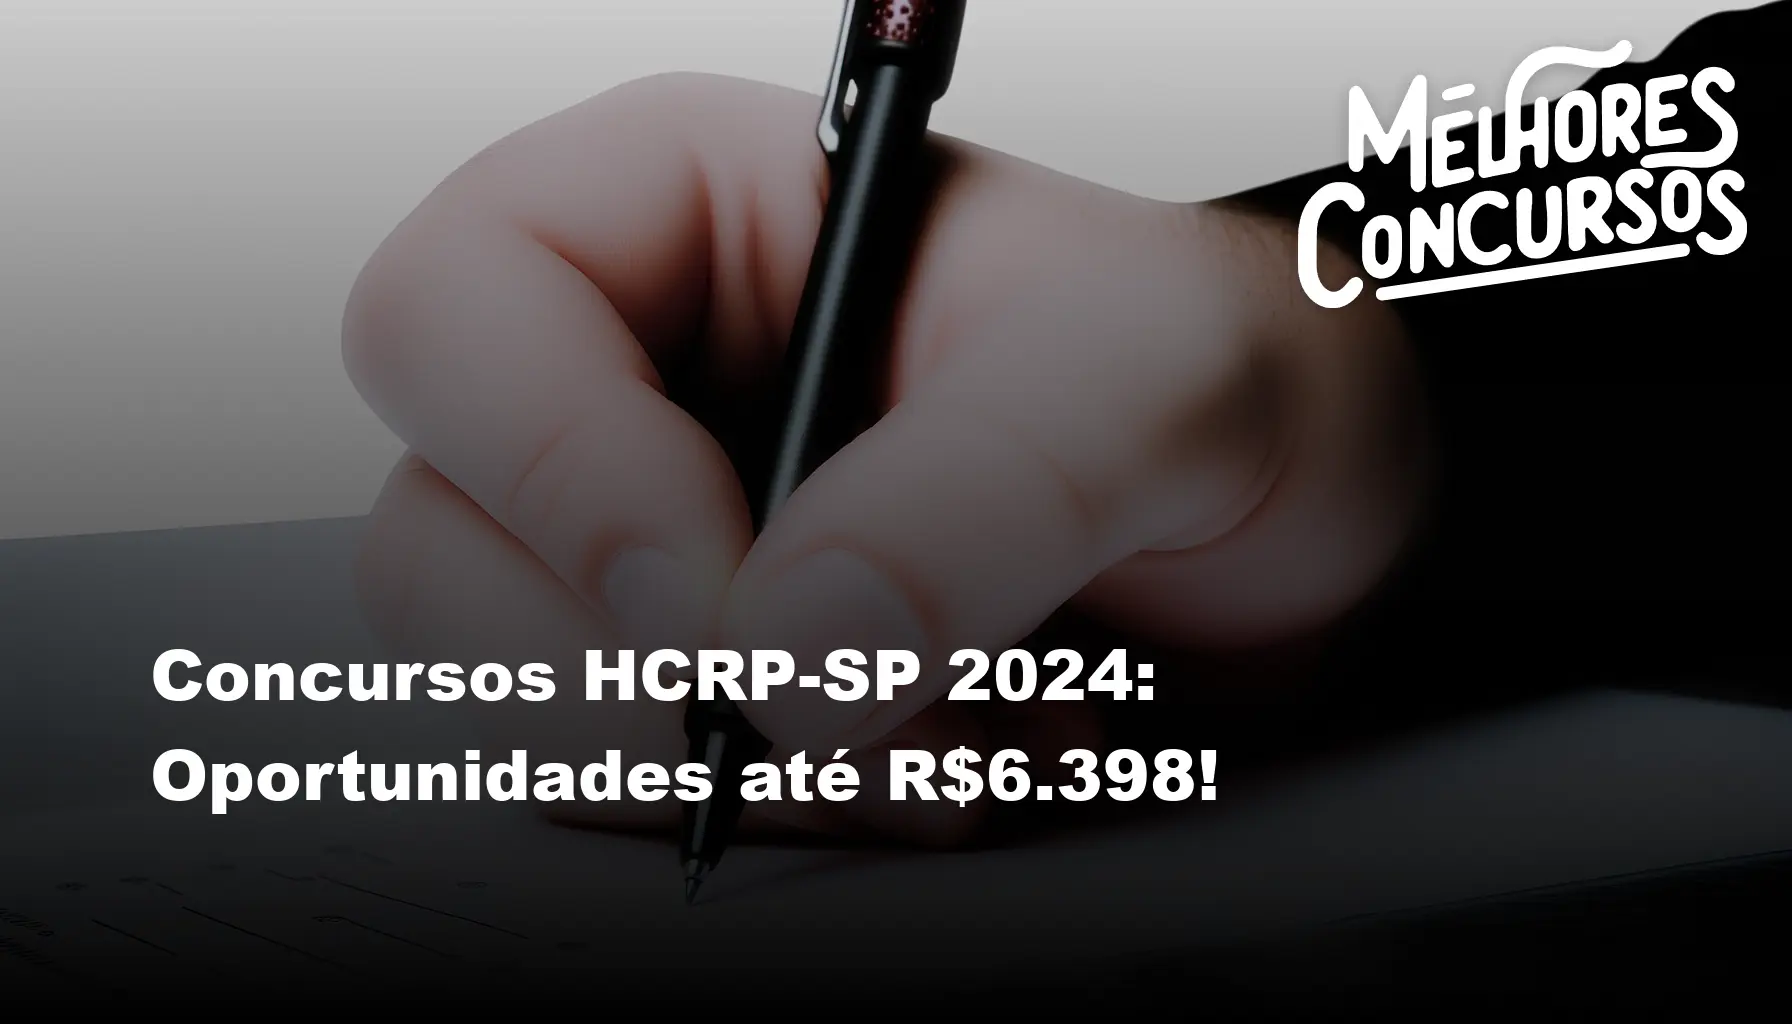 Concursos HCRP-SP 2024: Oportunidades até R$6.398!